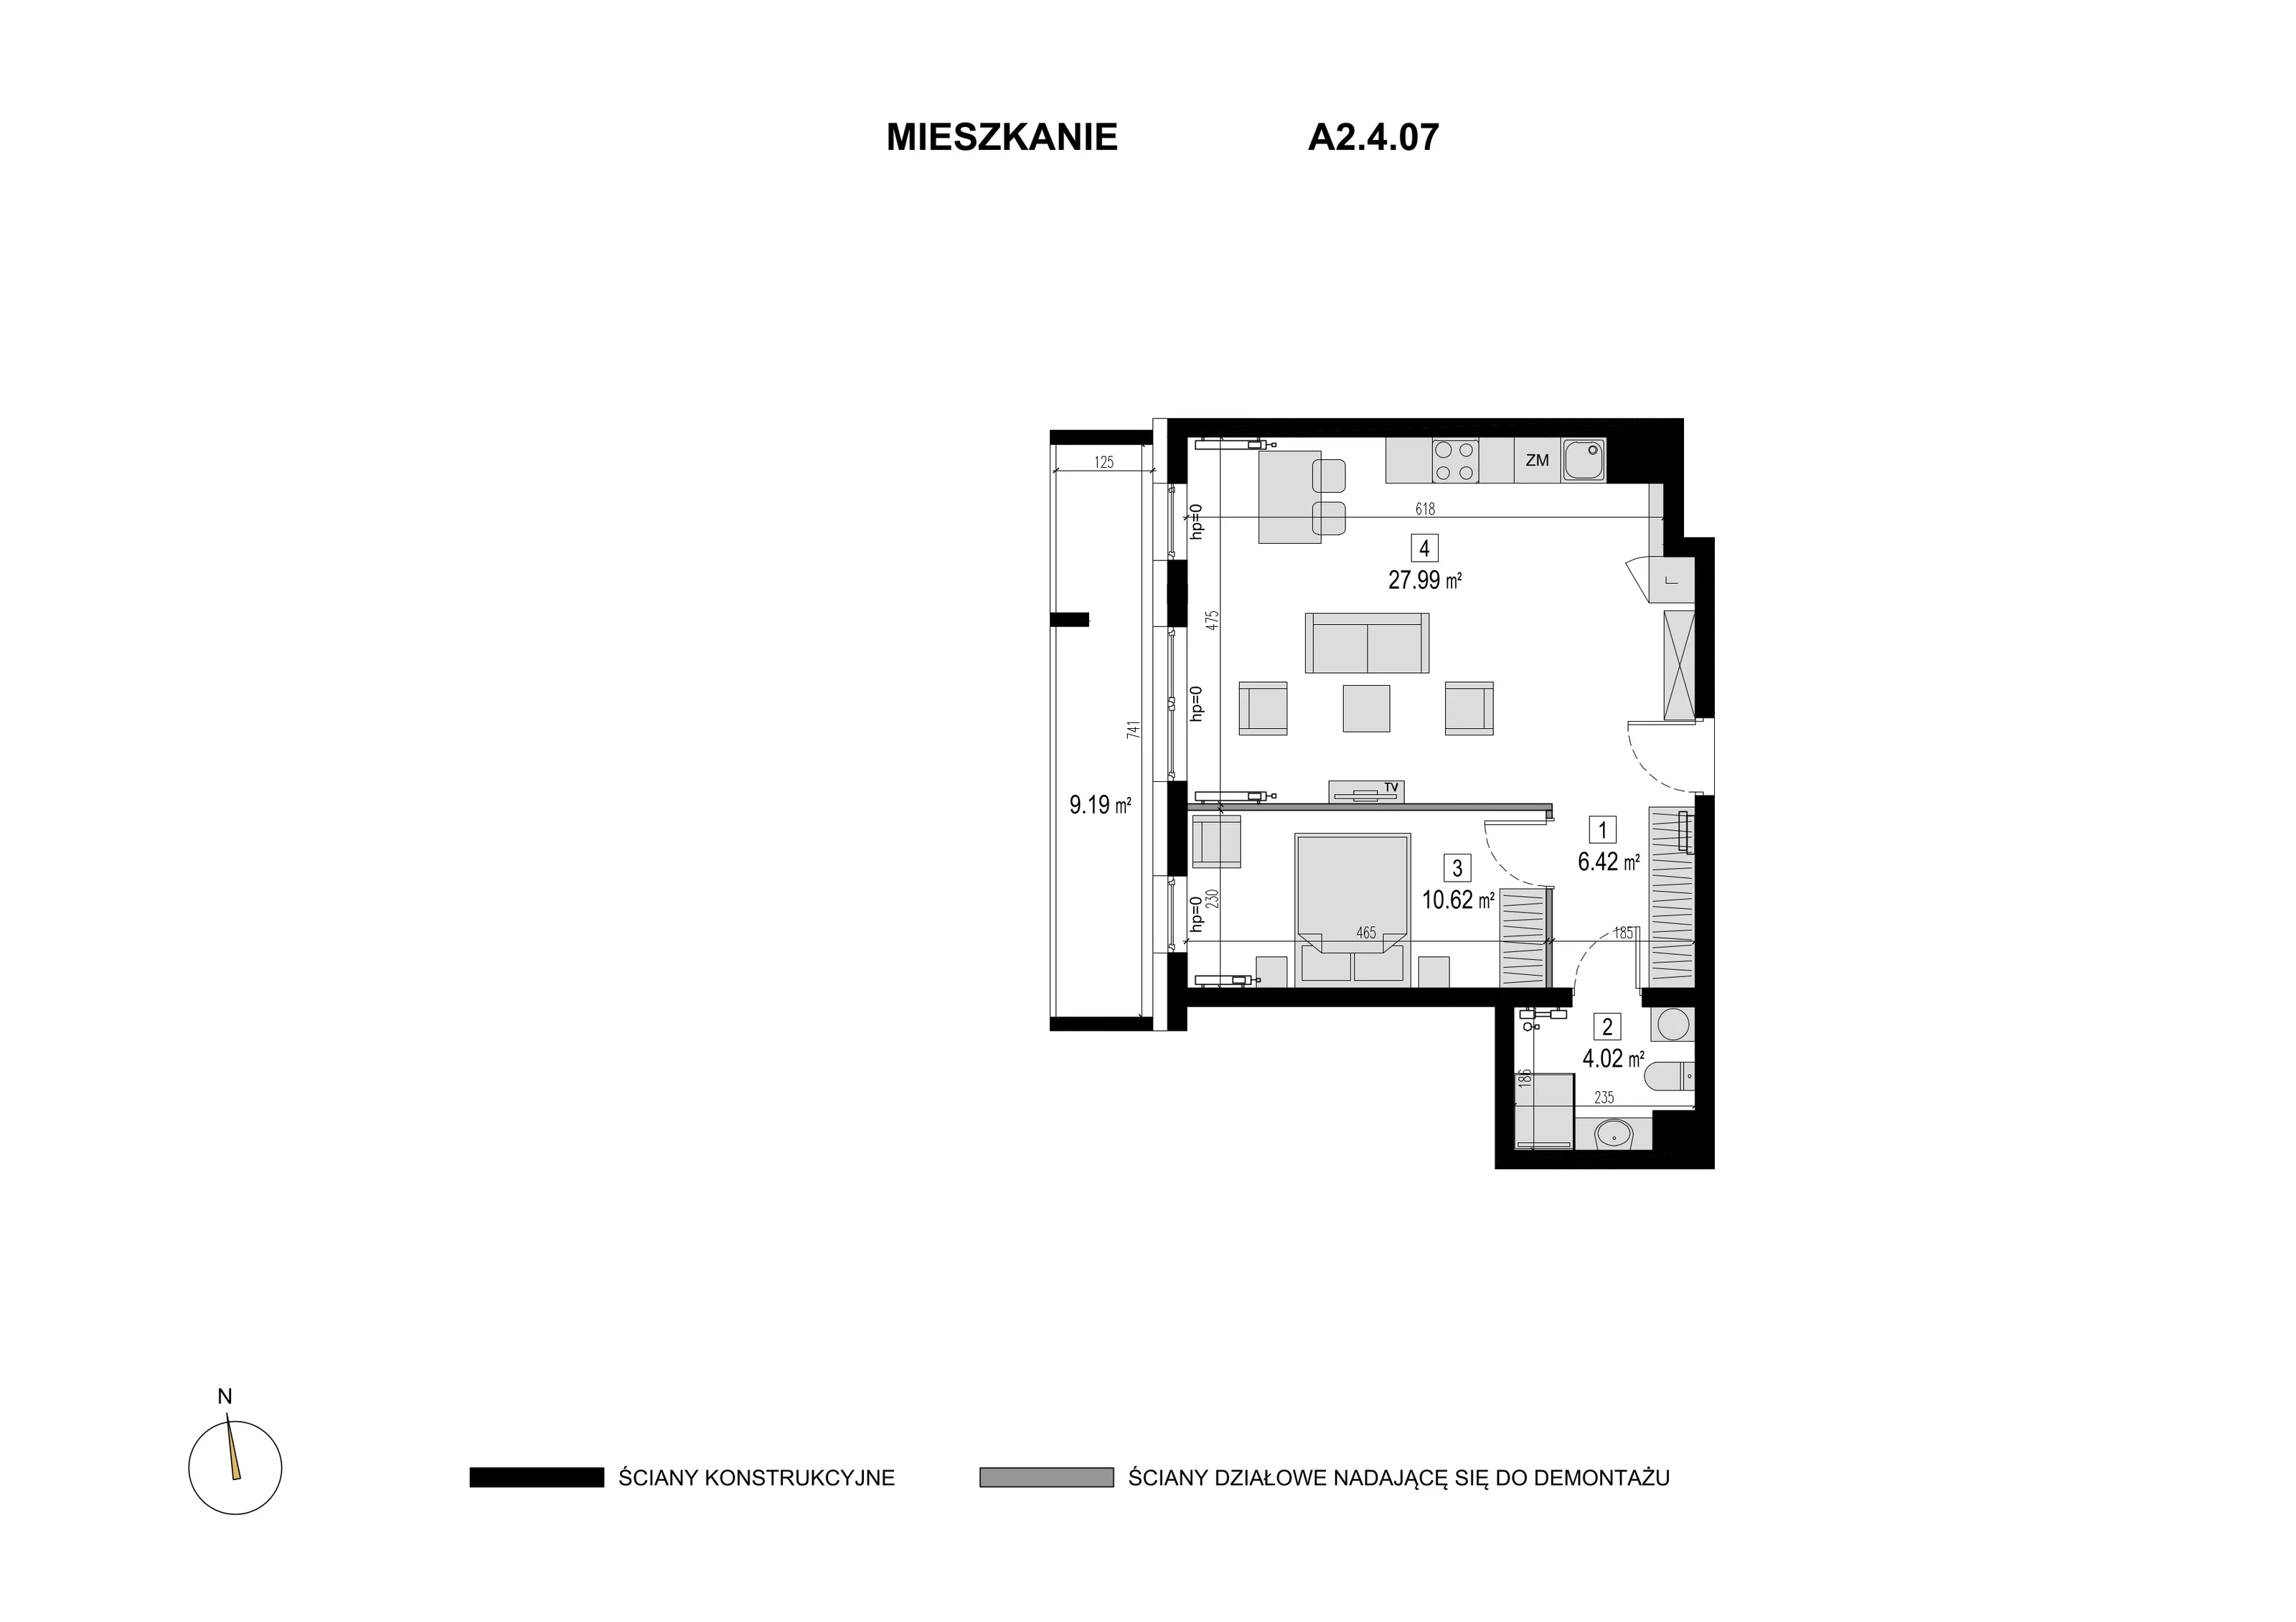 Mieszkanie 49,05 m², piętro 3, oferta nr A2.4.07, Novaforma, Legnica, ul. Chojnowska